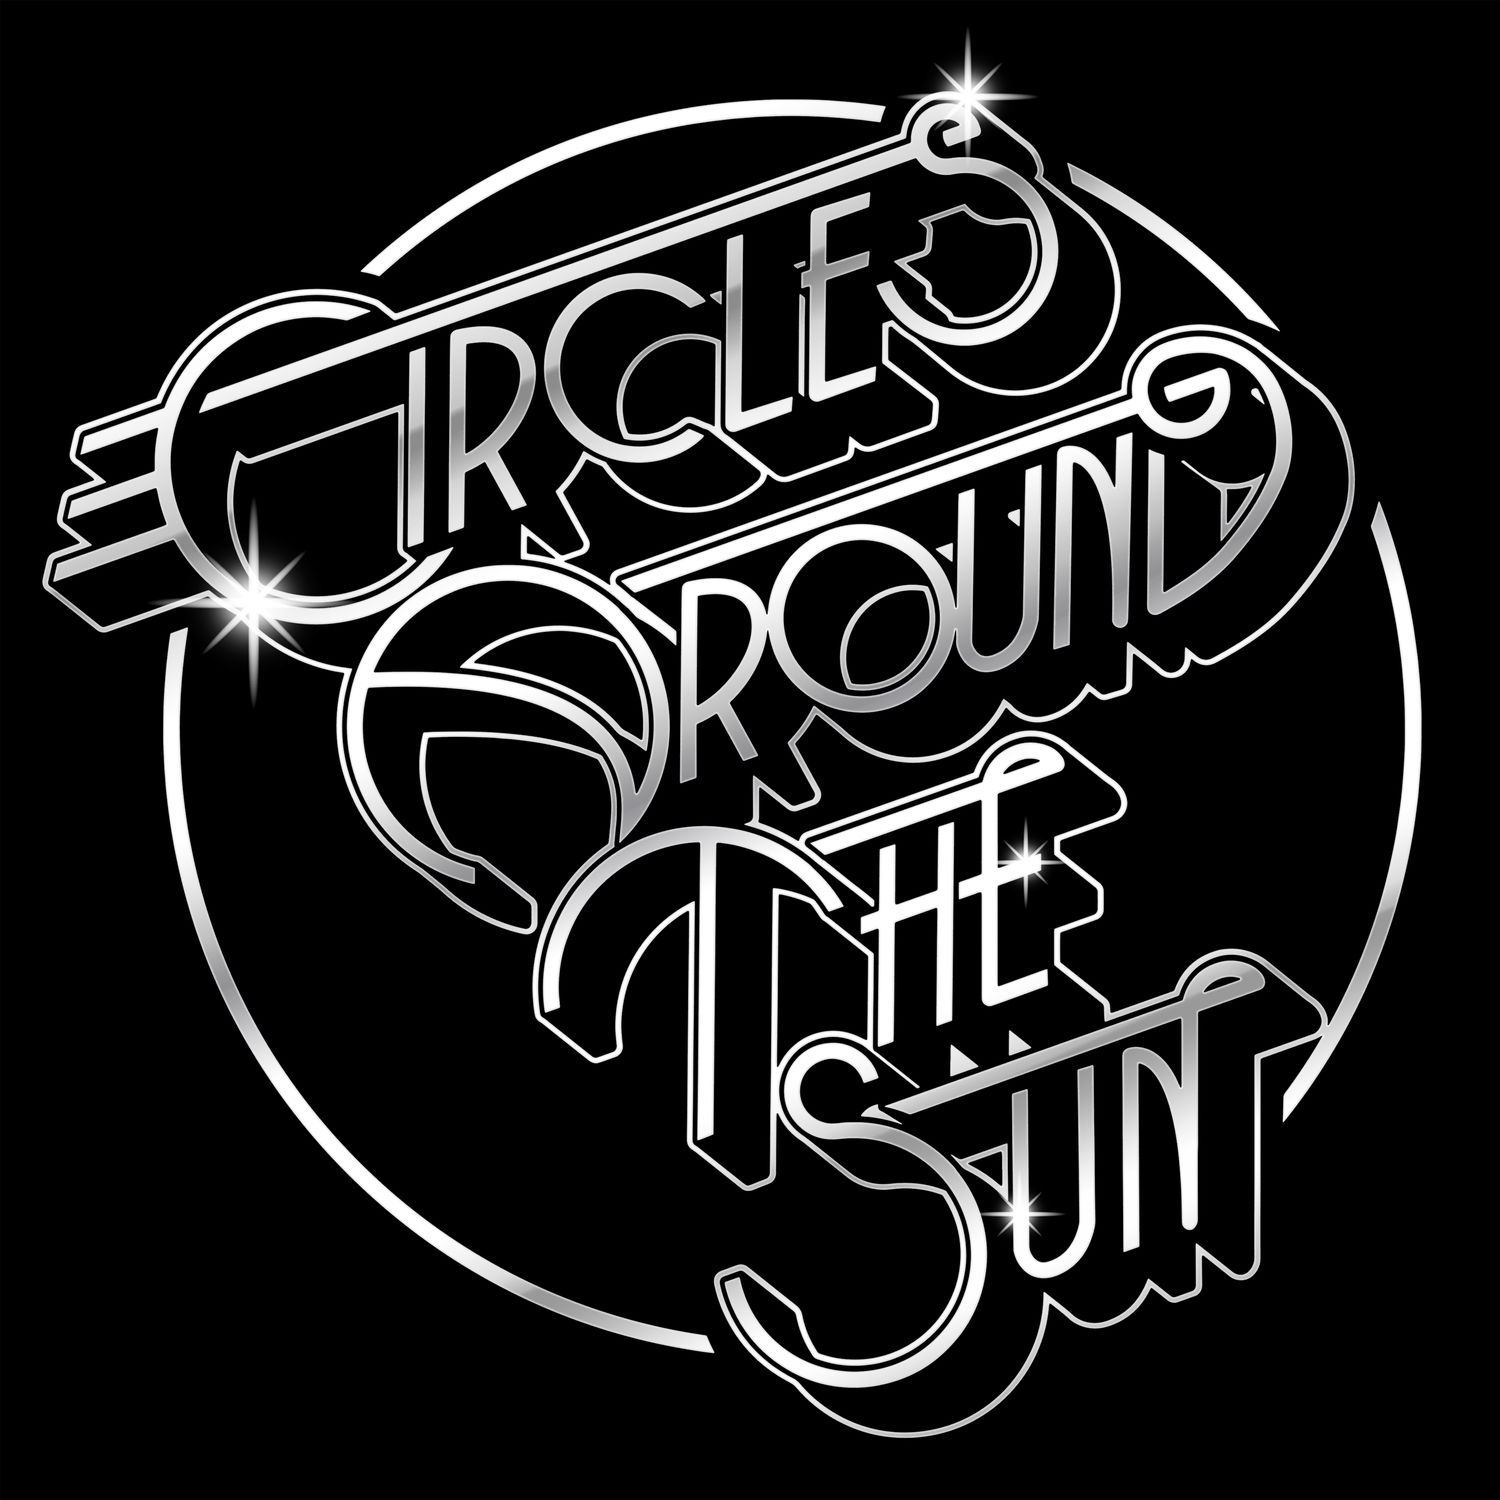 Circles Around The Sun - Circles Around The Sun (2020) [FLAC 24bit/48kHz]